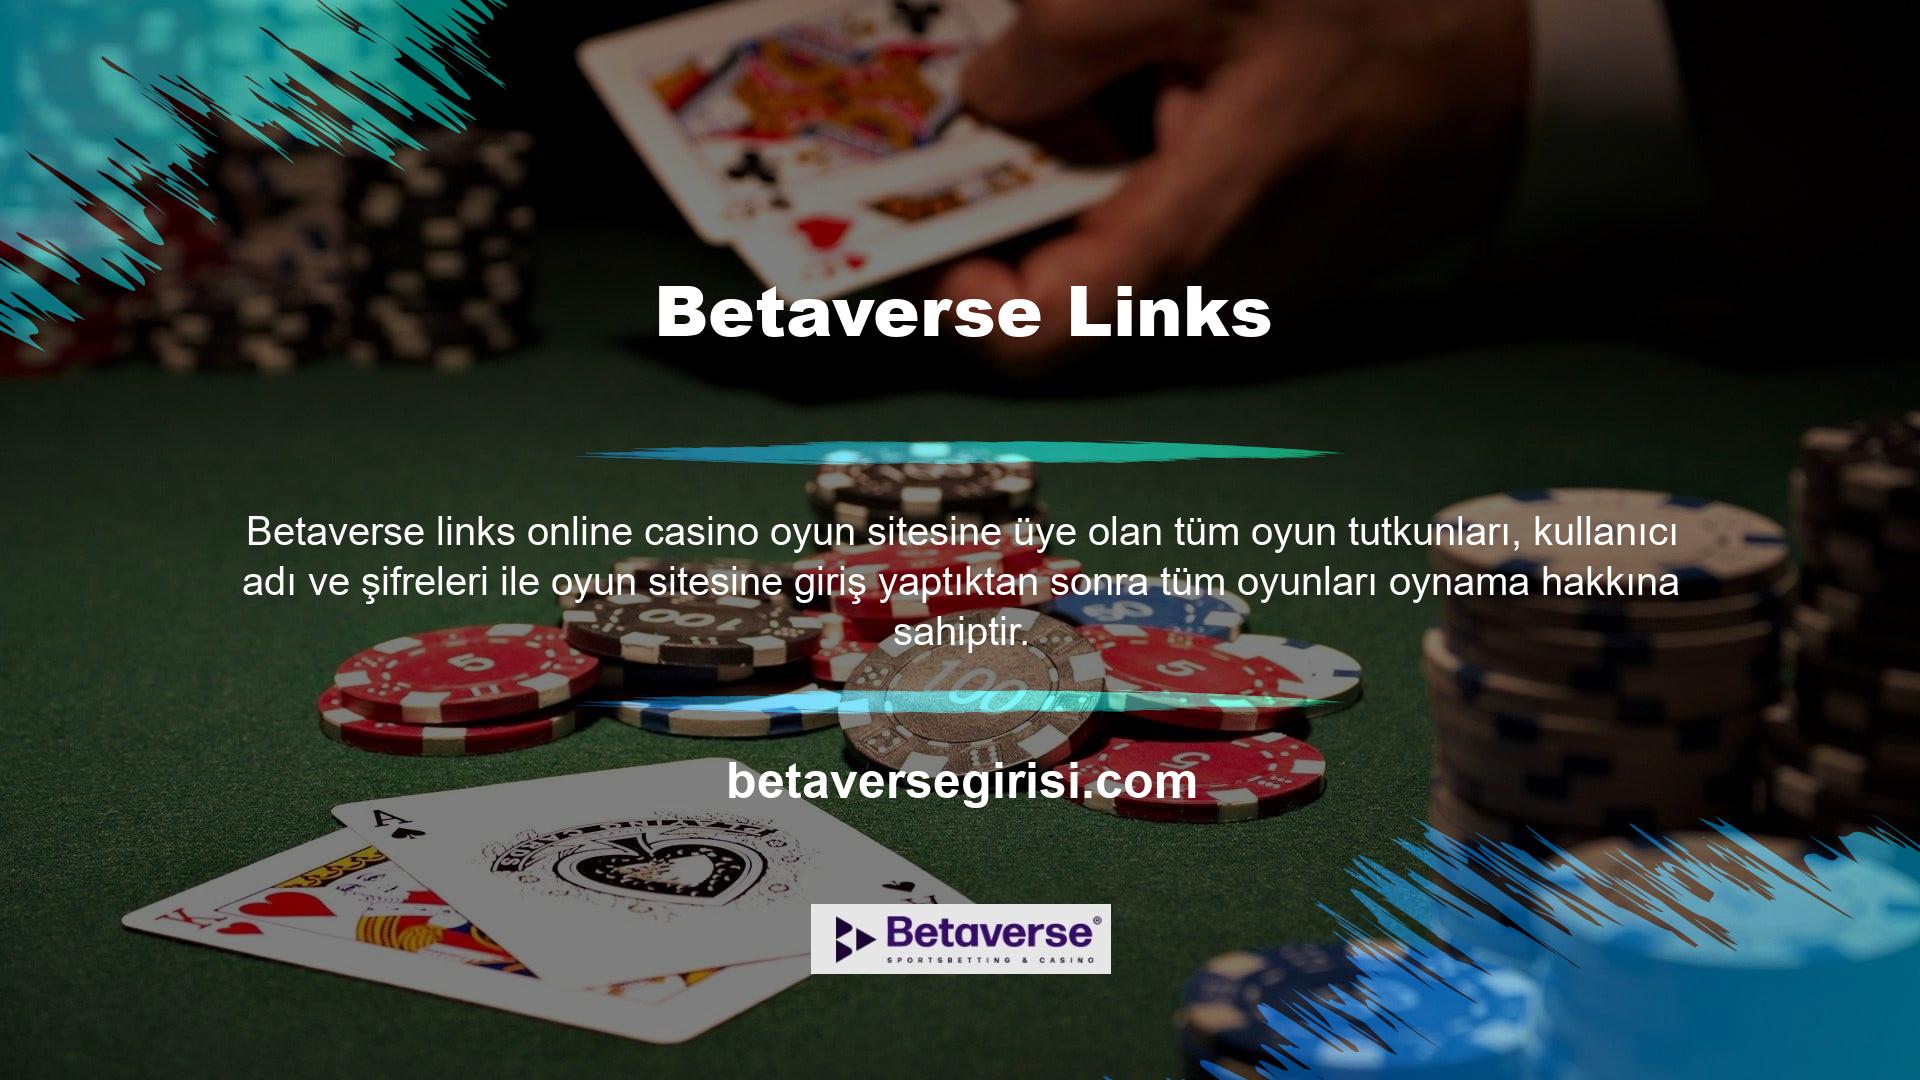 Çevrimiçi casino oyun siteleri genellikle slot, bingo, 3D oyunlar, poker oyunları, canlı oyunlar, rulet, blackjack, bakara, Texas hold'em ve daha fazlasını içerir